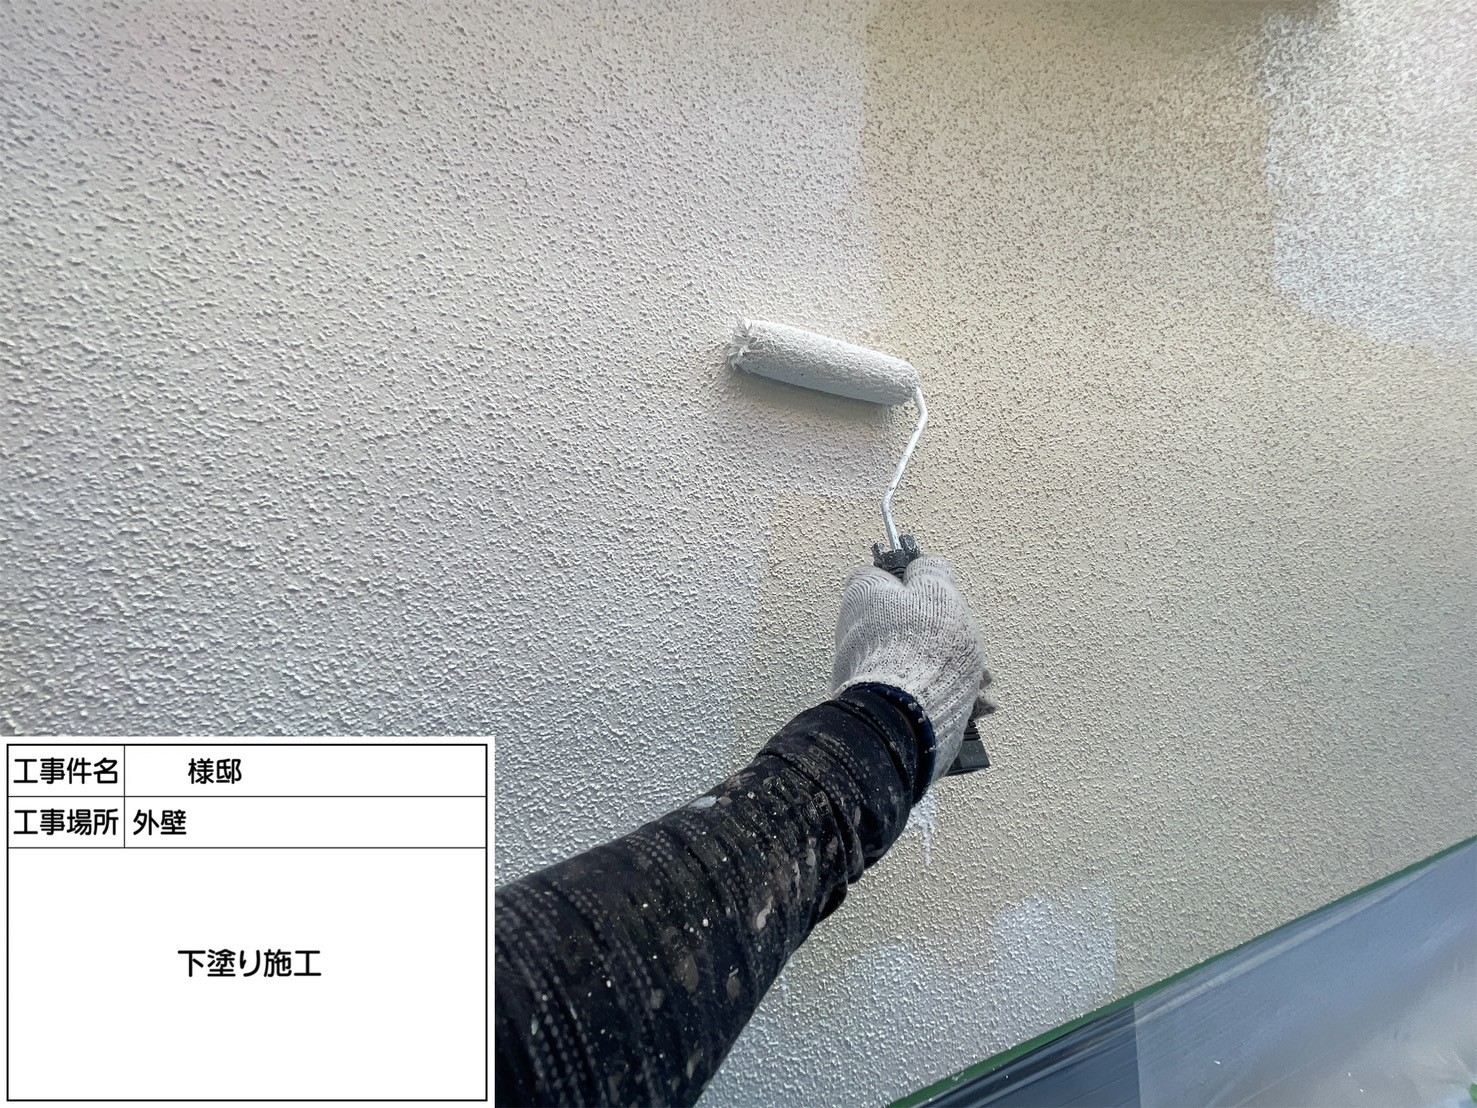 福岡県小郡市希みが丘のI様邸で高い遮熱性のあるフッ素塗料、エシカルプロクールFを使用した外壁塗装を行い、部分的にデザイン塗装を取り入れた工事を行っていきます。5/16着工です。【チラシより】